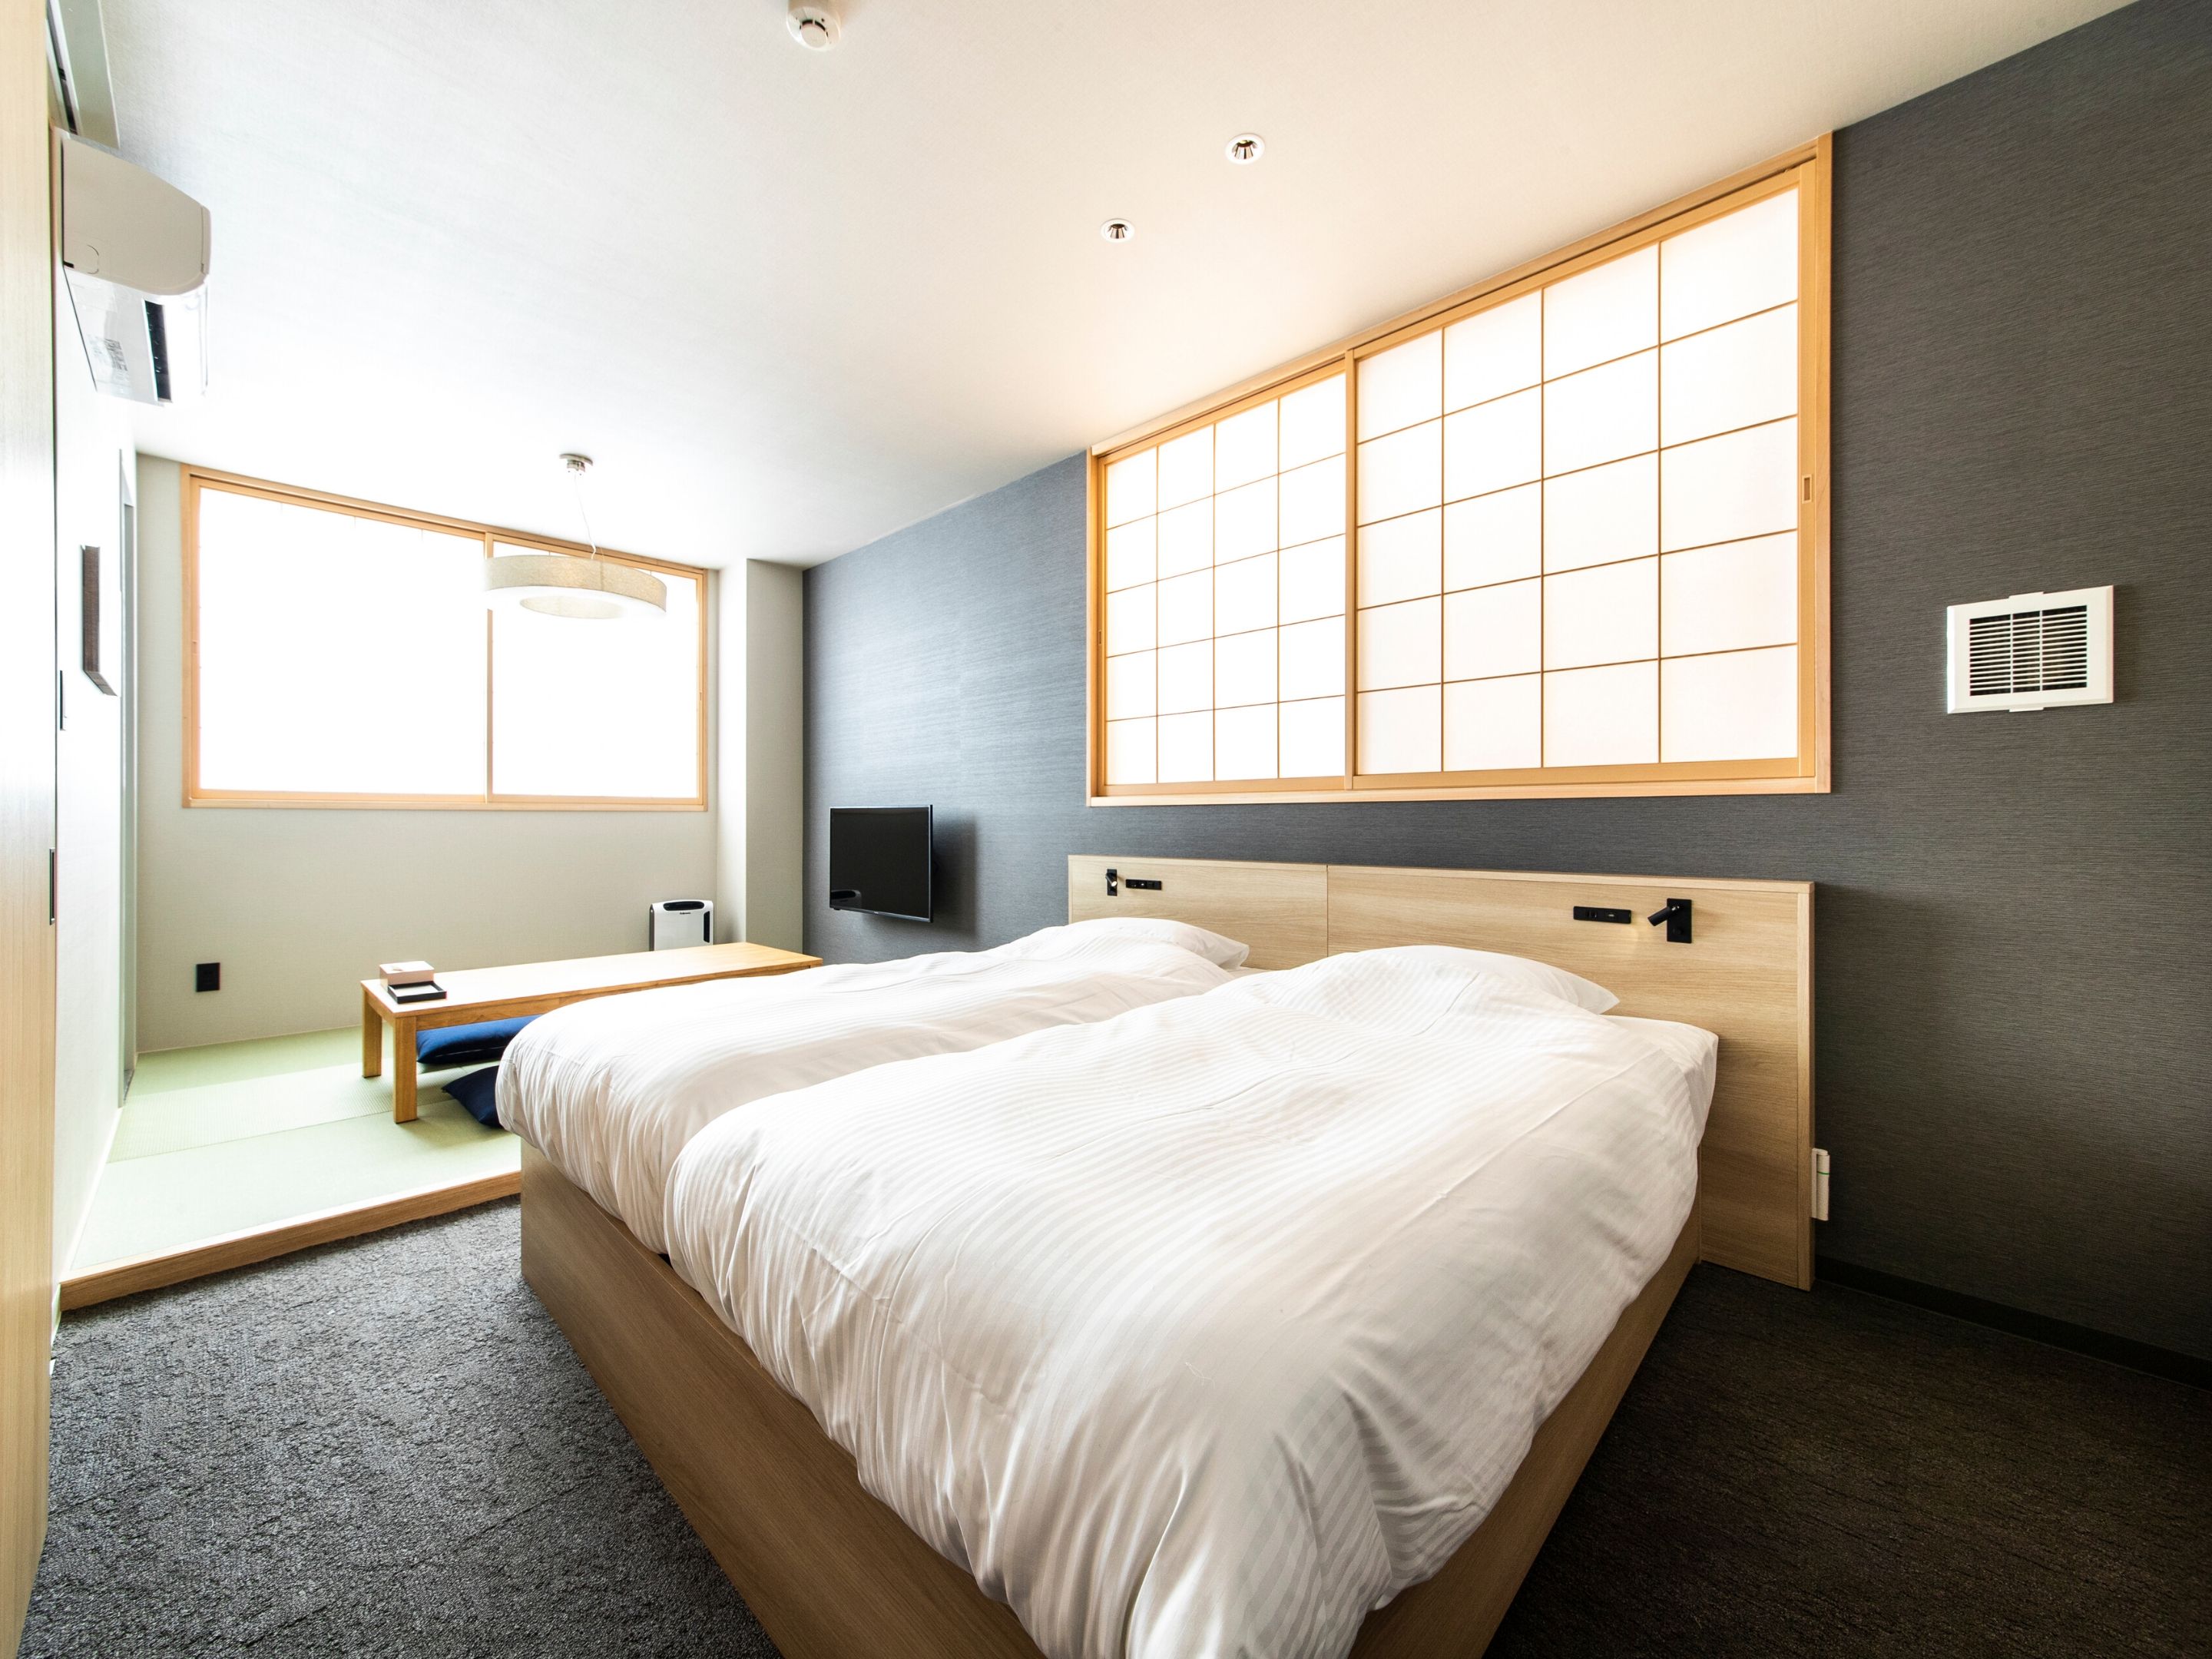 福岡からは、4人まで宿泊できるゆったりとしたファミリールームなどを備えるALPHABED INN 福岡大濠公園をご紹介。